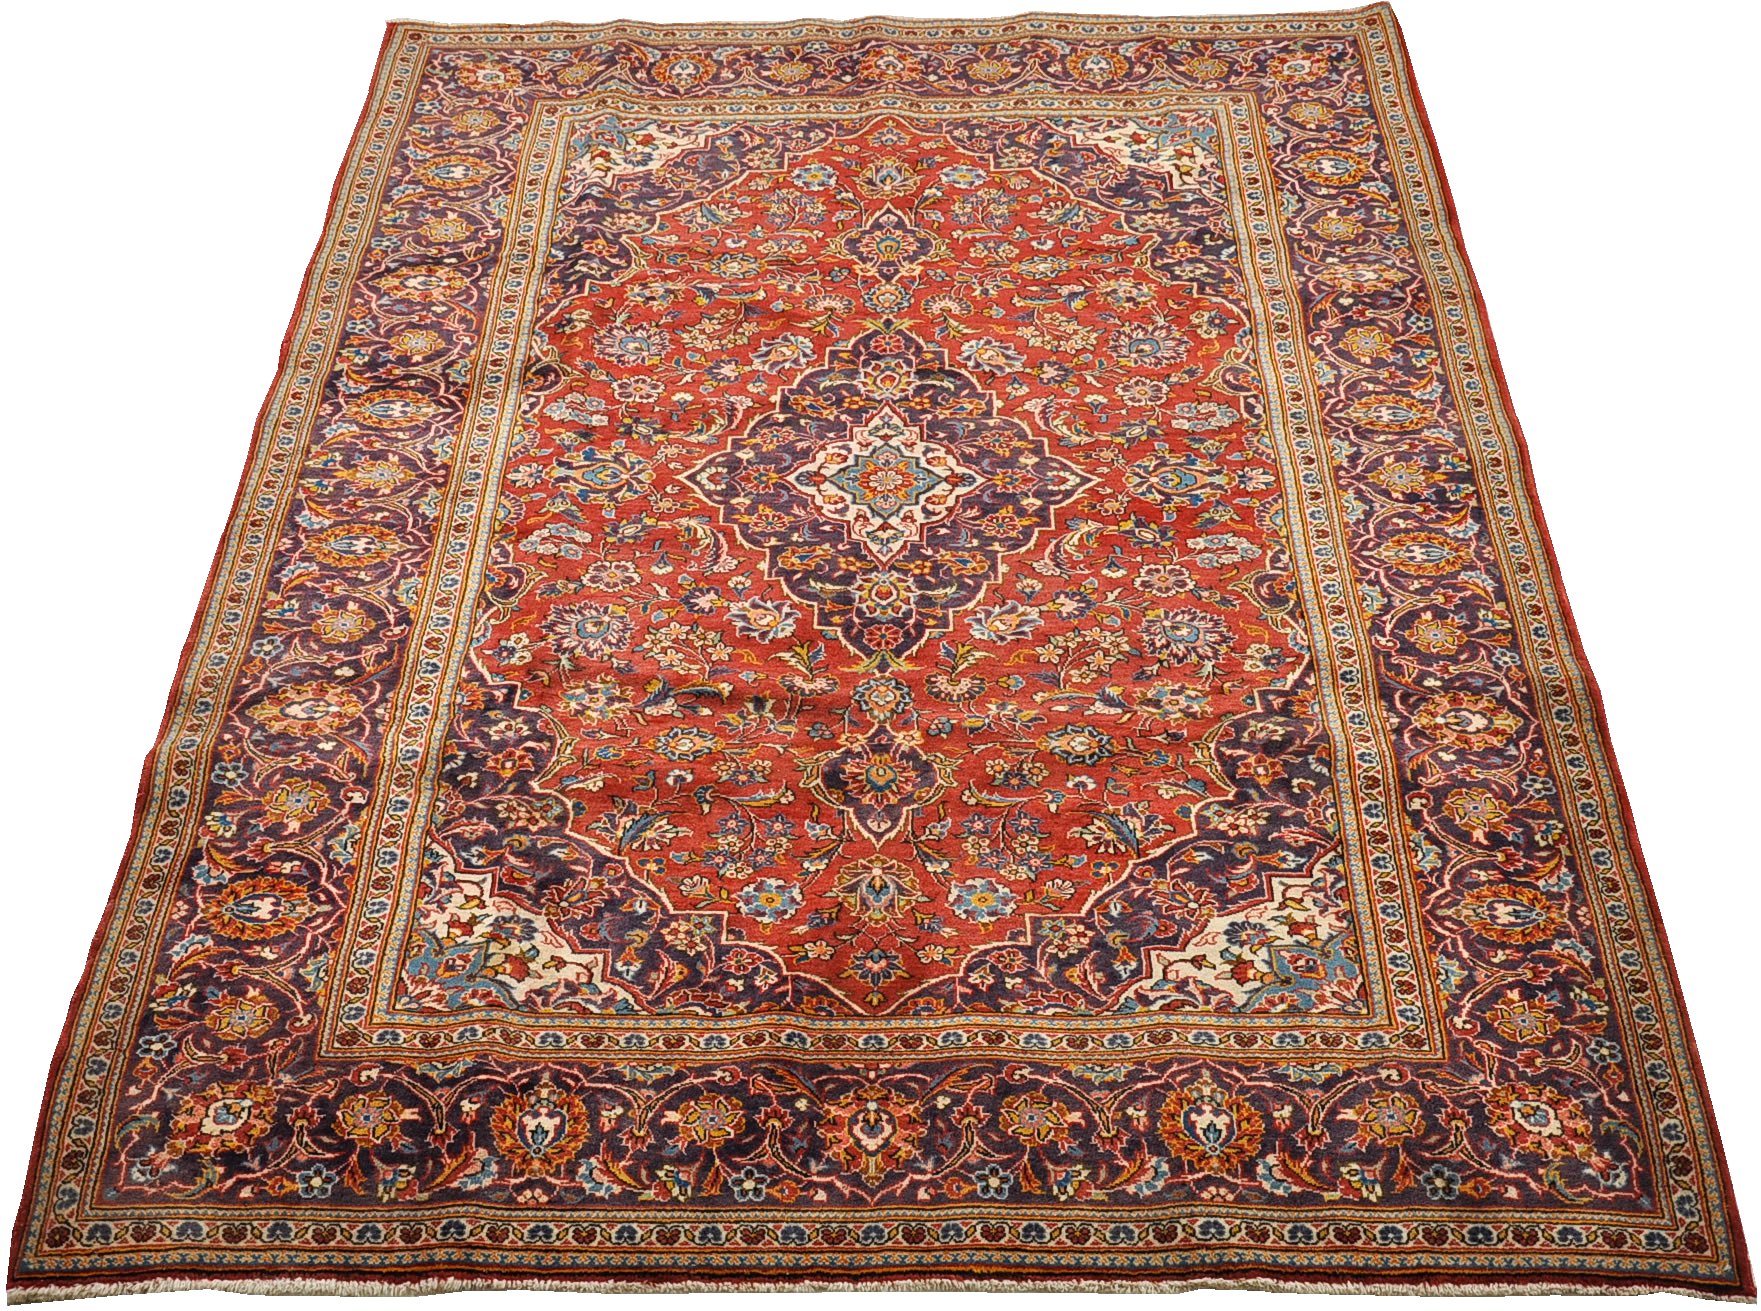 A Kashan Carpet, 05.22.10, Sold: $437